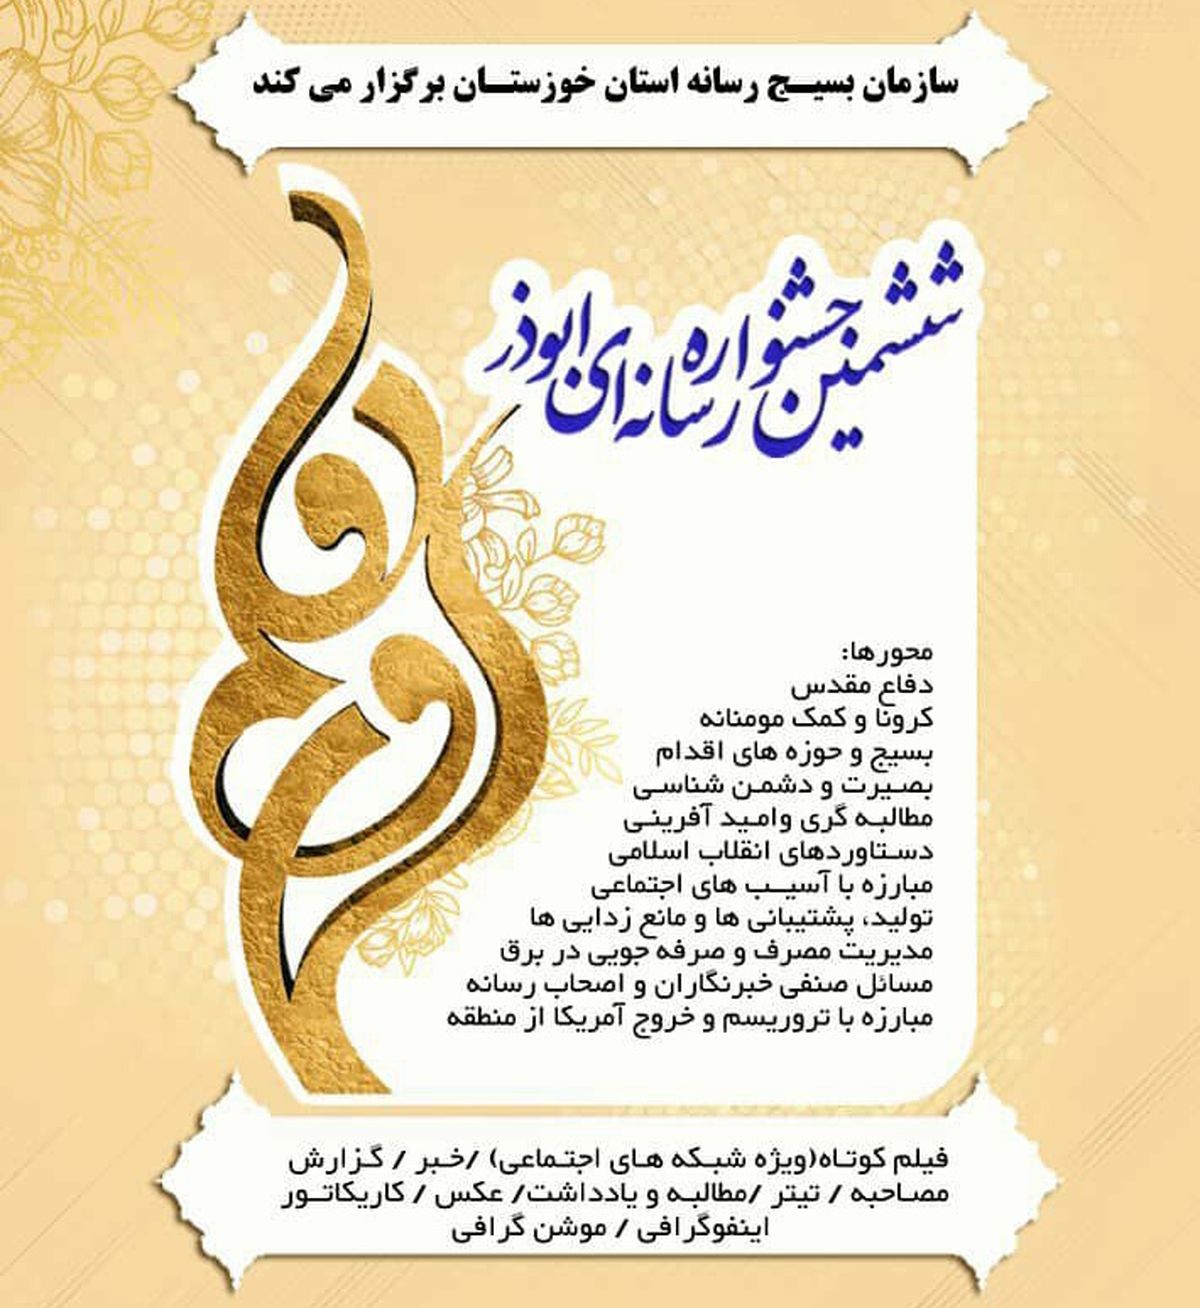 ۳۰ آبان آخرین مهلت ارسال آثار به ششمین جشنواره رسانه ای ابوذر خوزستان